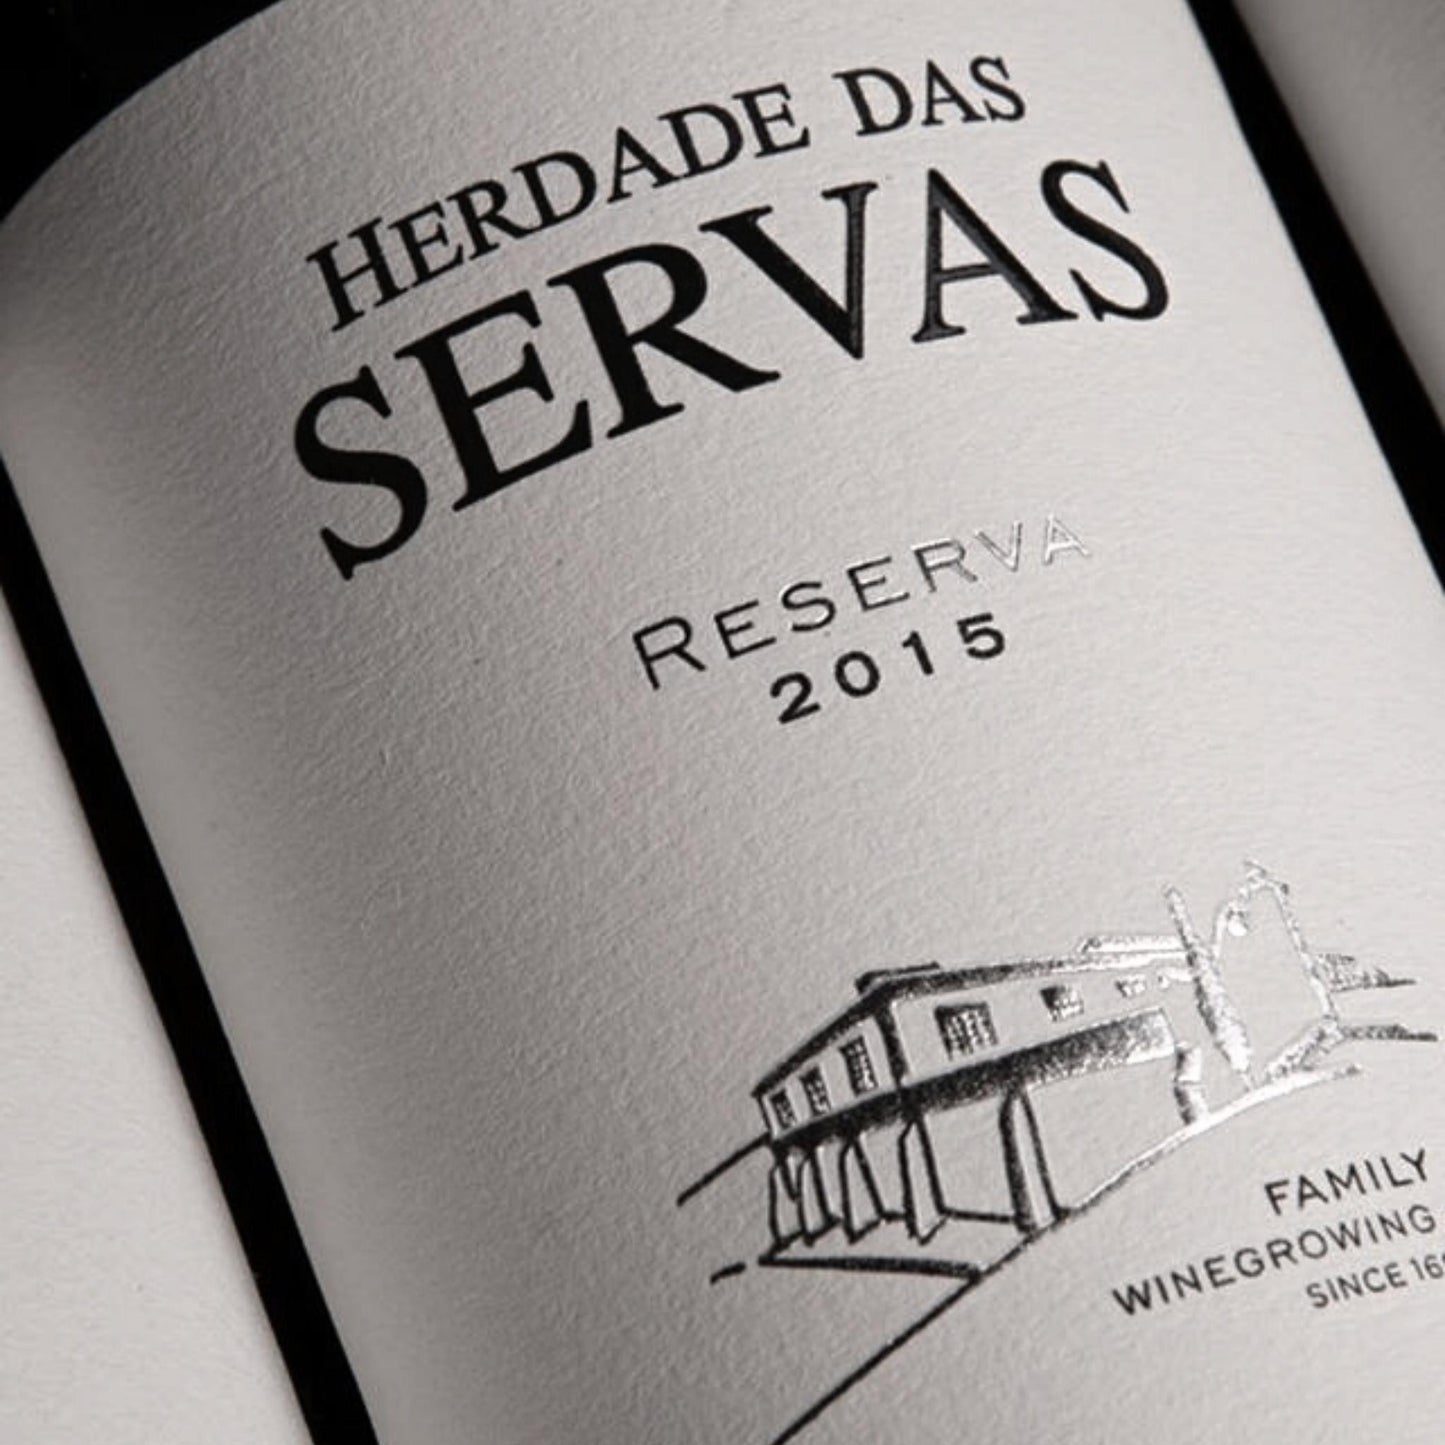 
                  
                    HERDADE DAS SERVAS RESERVA: Rotwein vom Weingut Herdade das Servas aus der Region Estremoz – Alentejo/Portugal.
                  
                